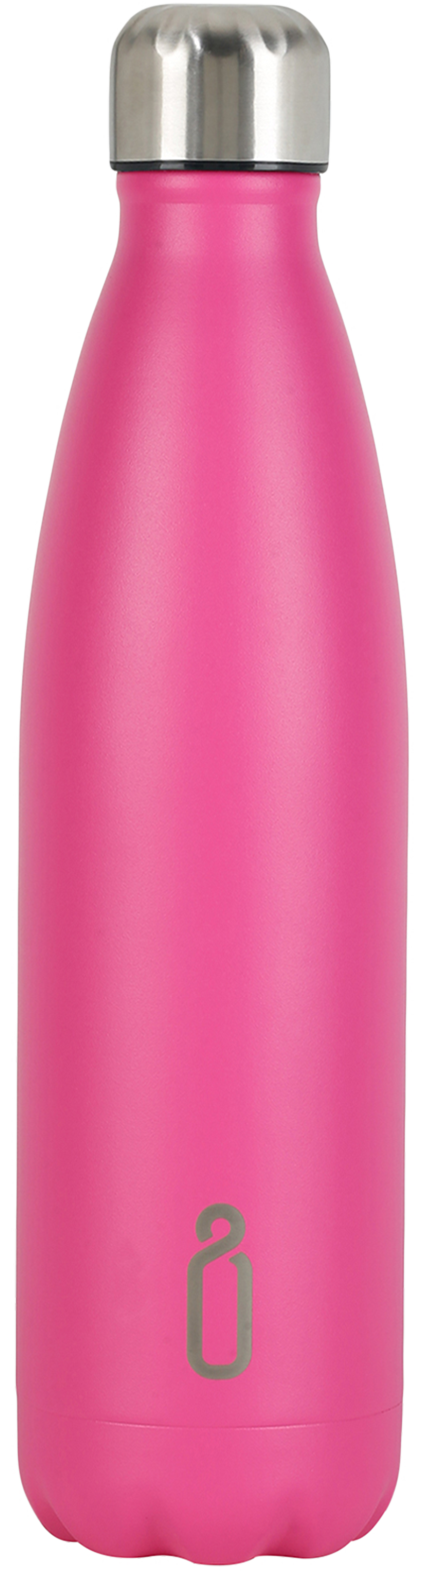 Neon Pink Reusable Water Bottle 750ml